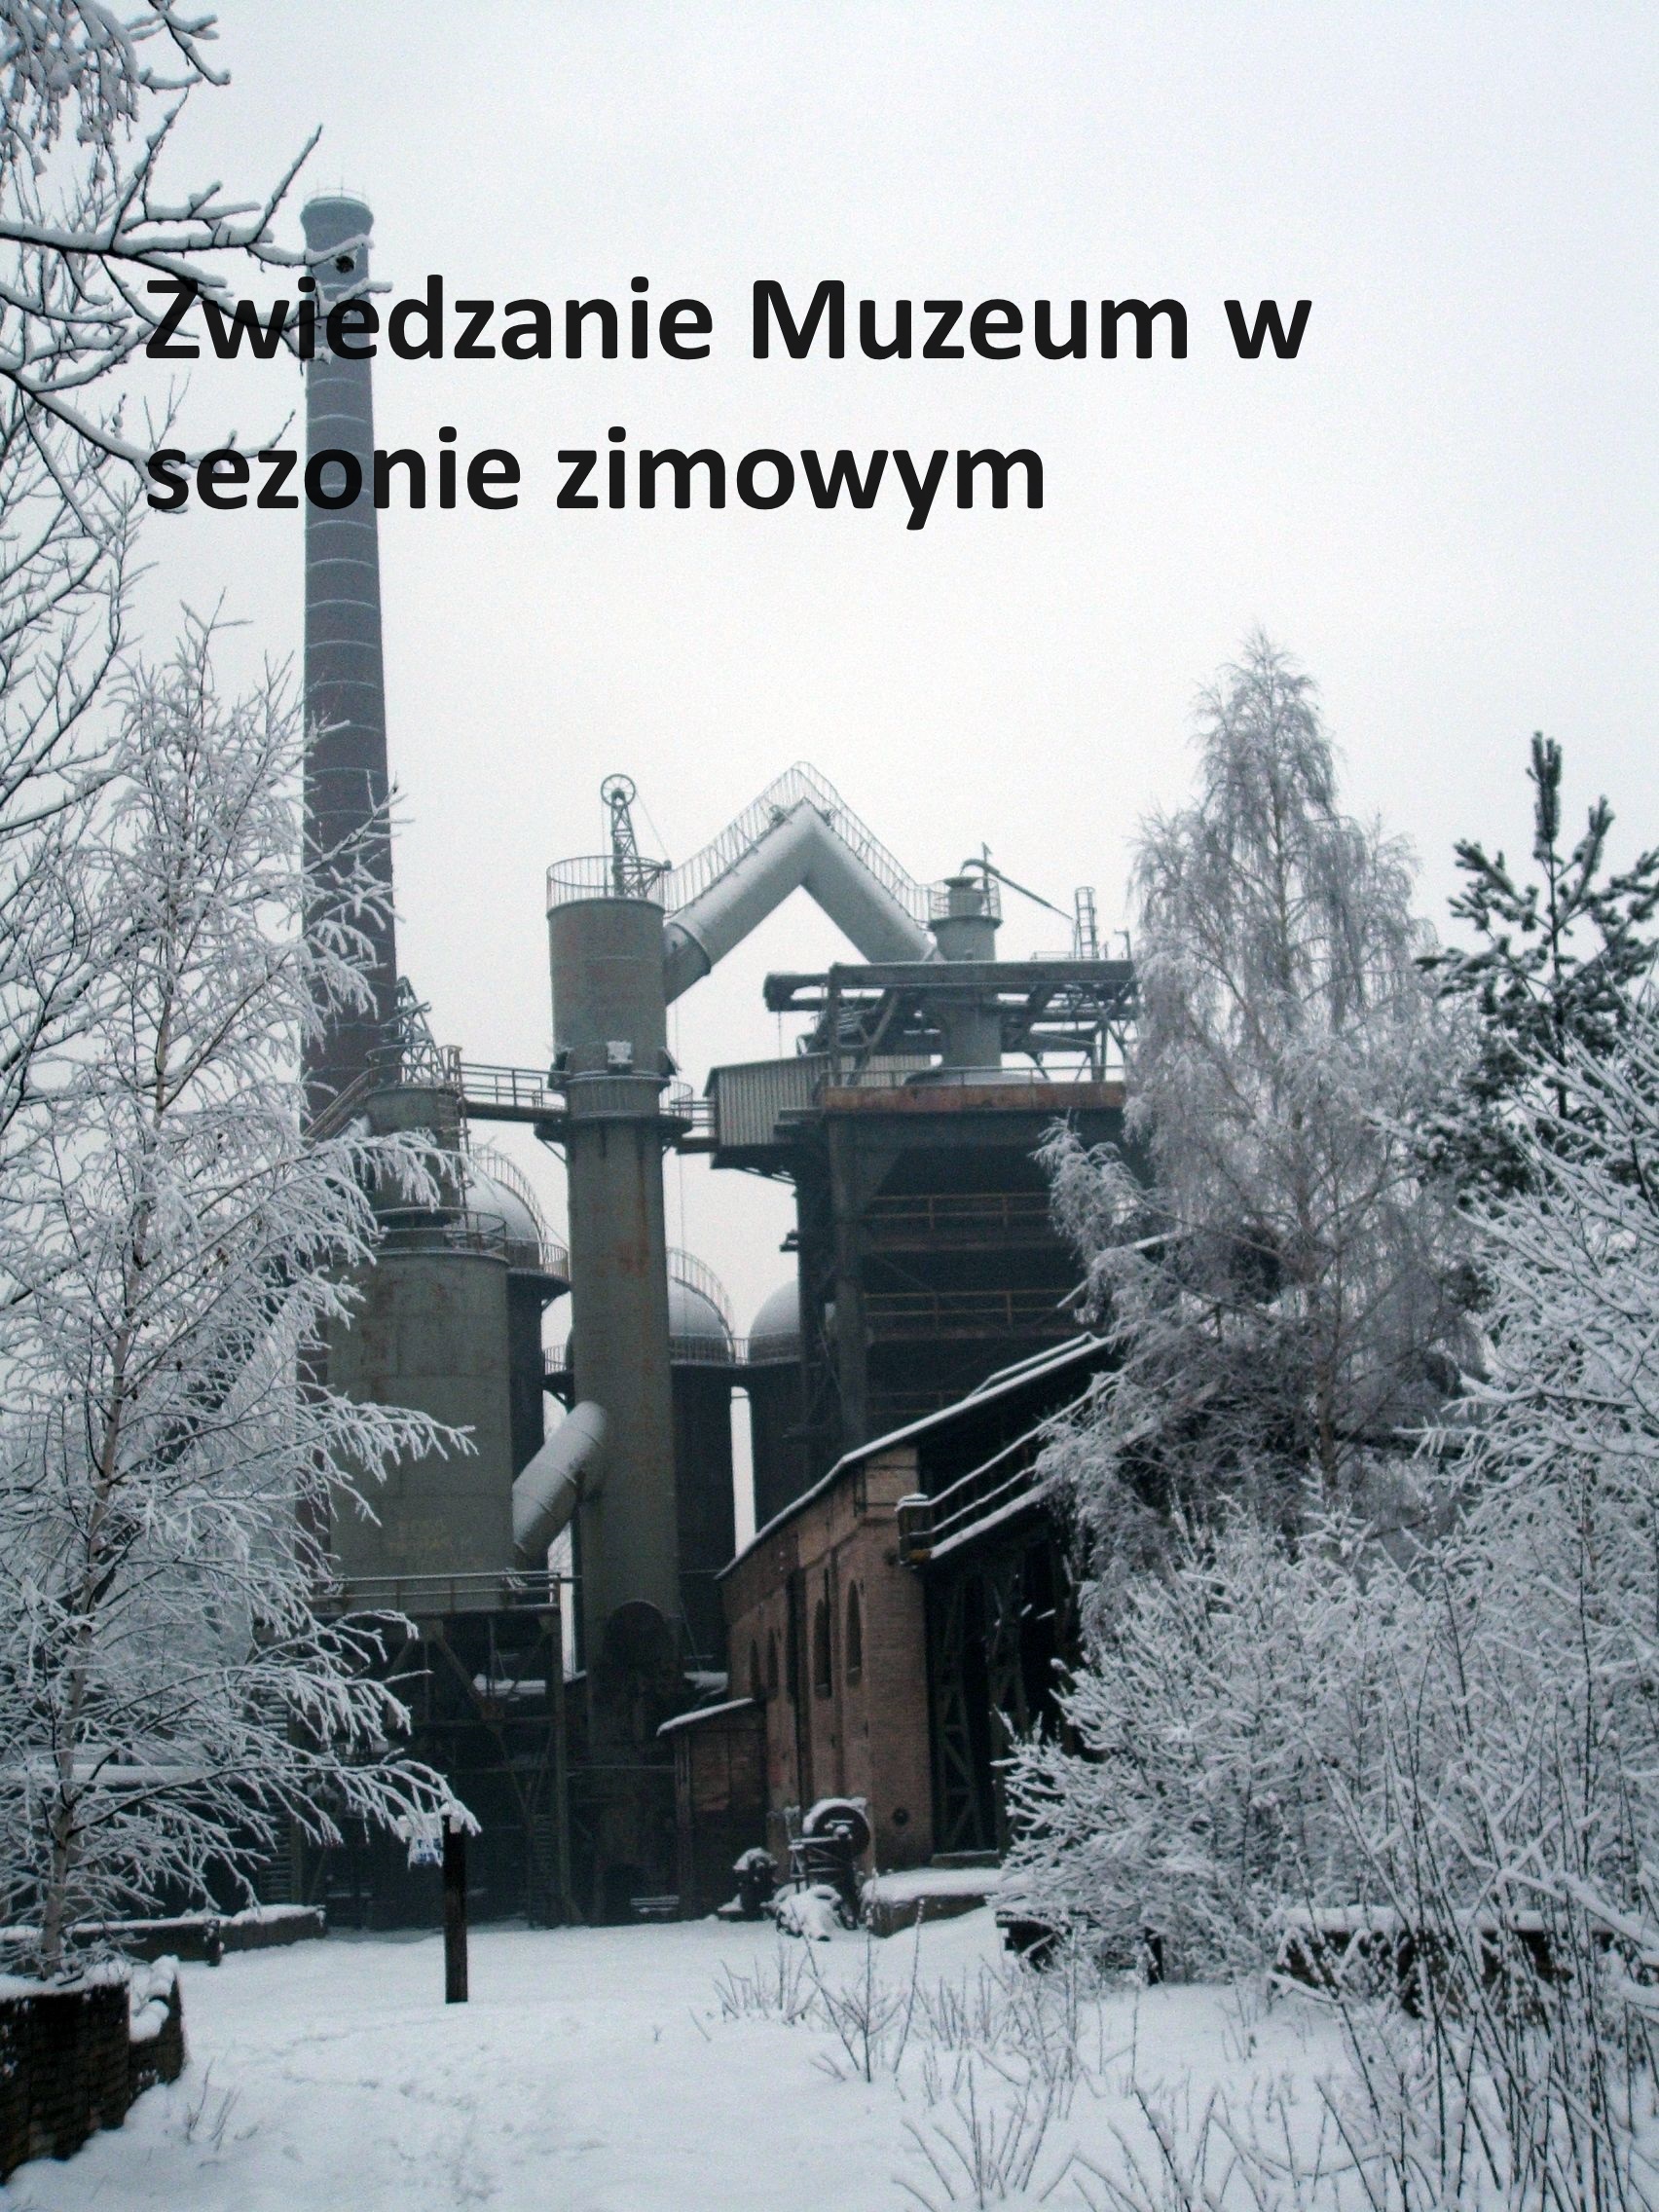 Zwiedzanie Muzeum w sezonie zimowym